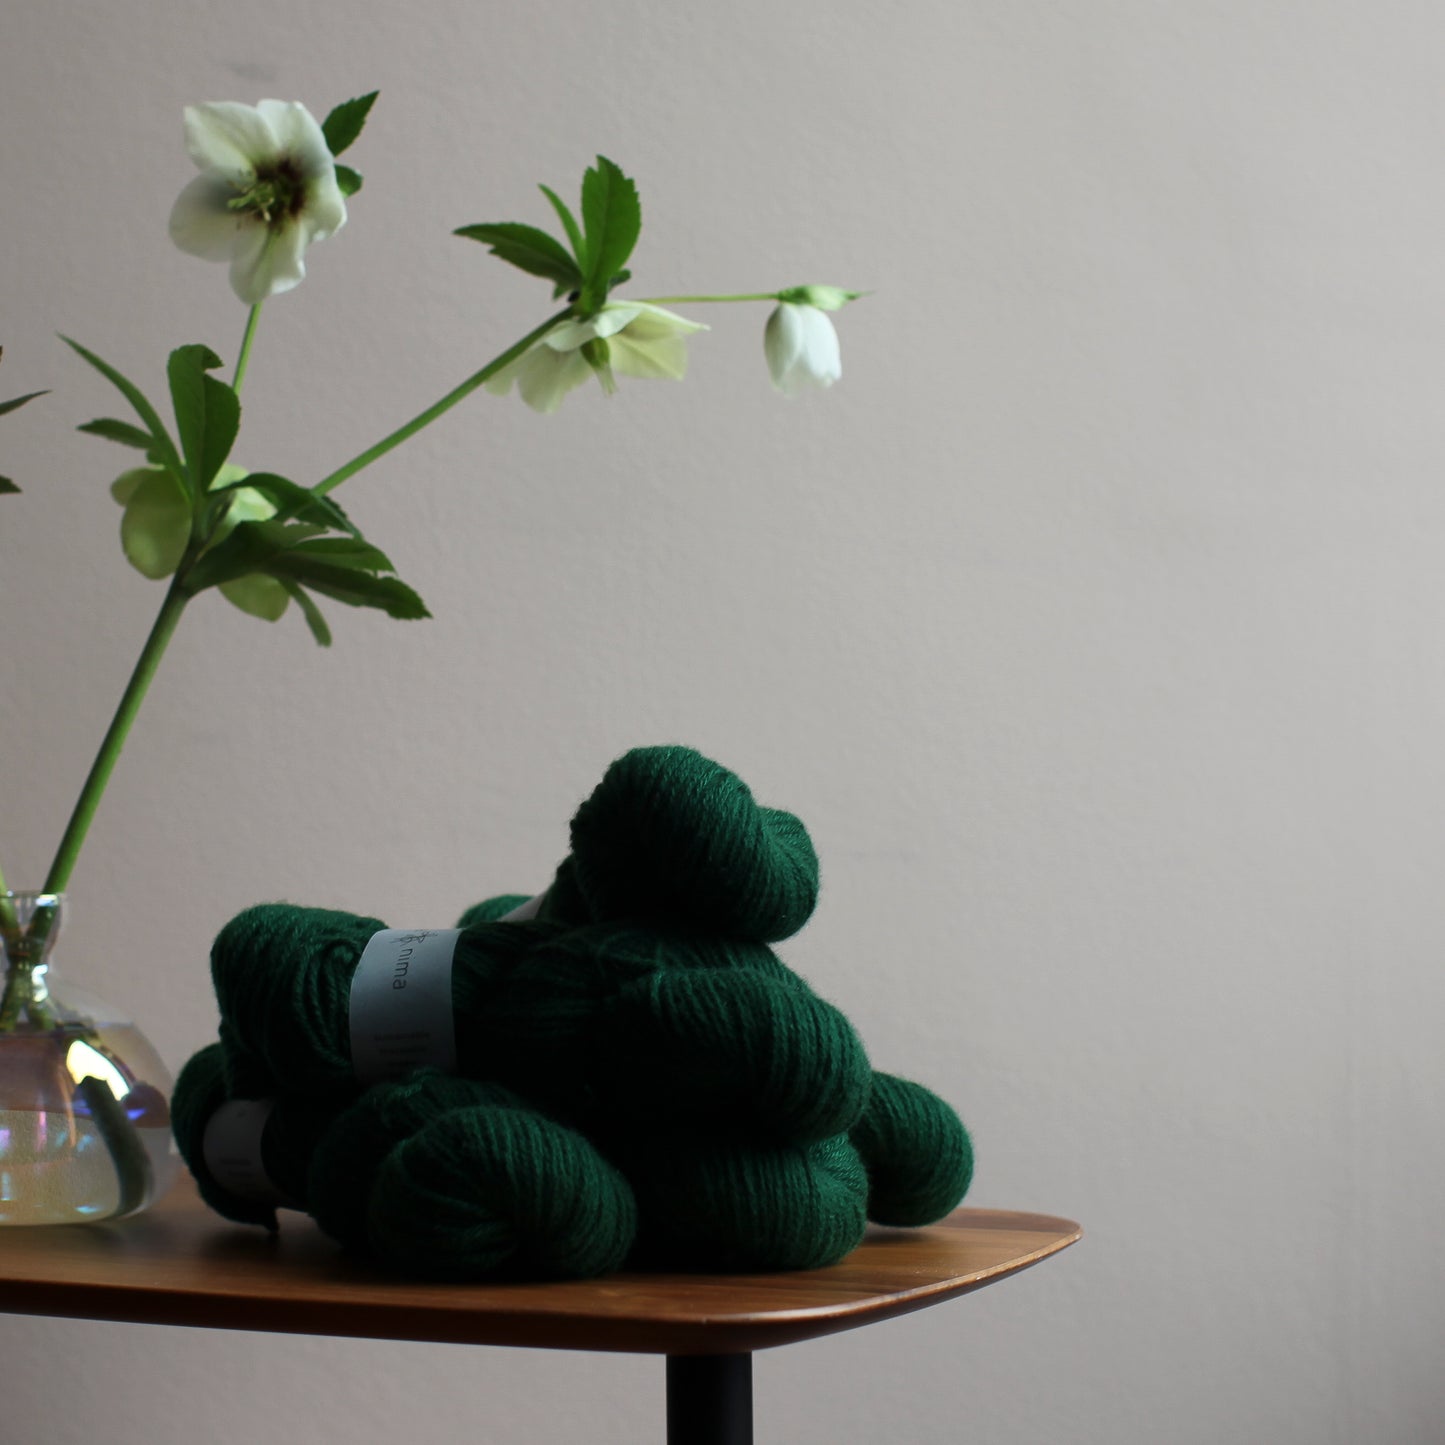 DK cashmere yarn